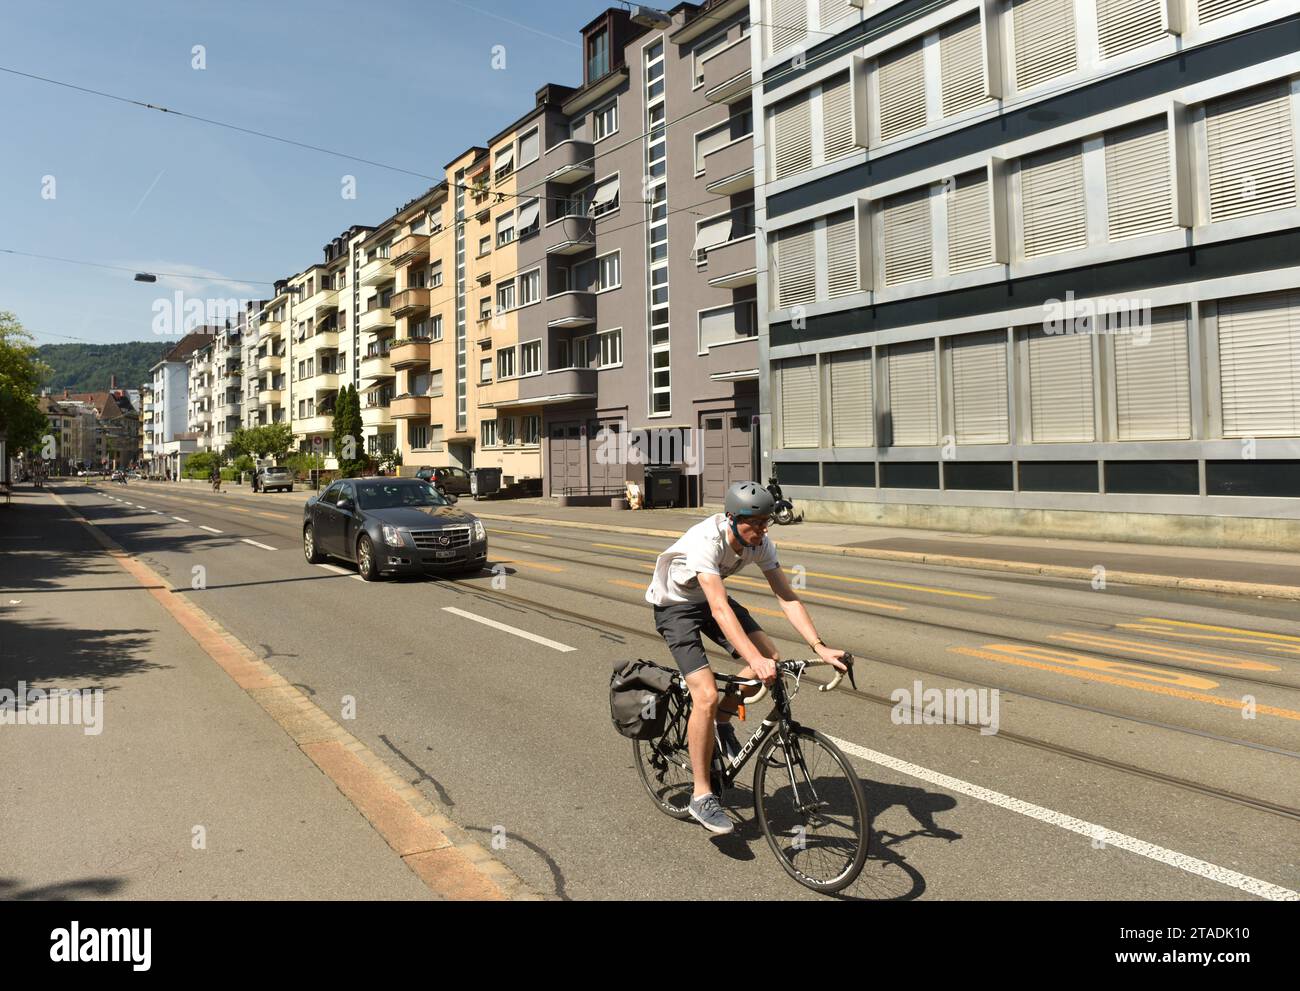 Zürich, Schweiz - 03. Juni 2017: Radfahrer auf der Straße von Zürich. Der Alltag in Zürich. Stockfoto